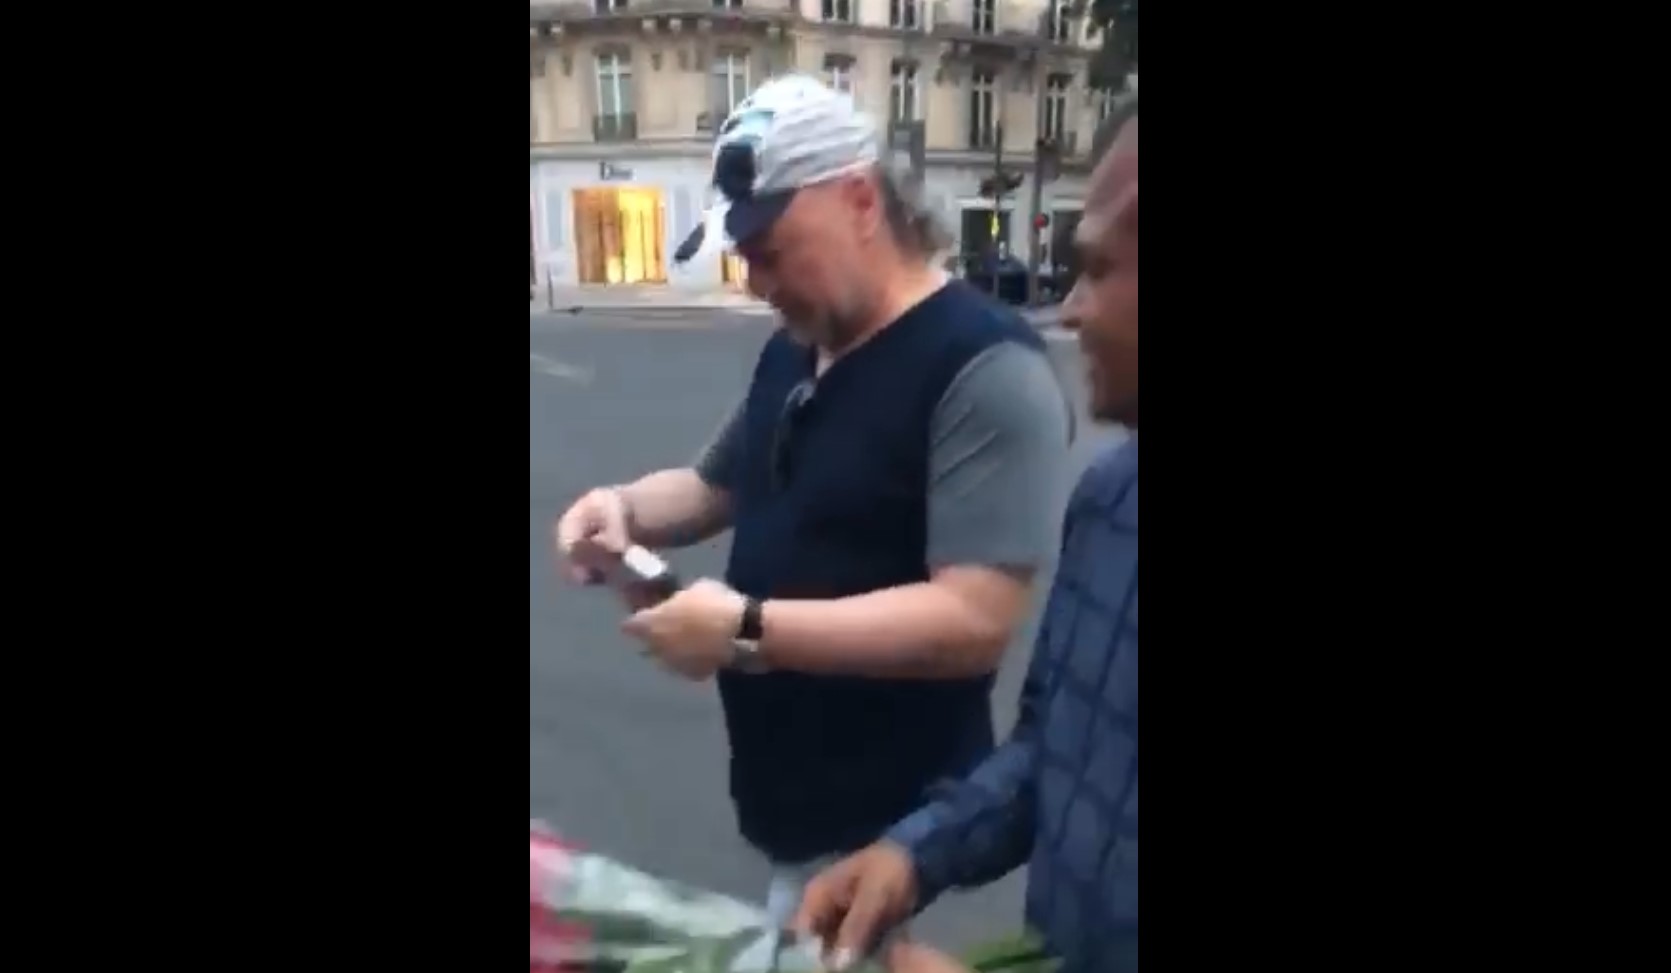 Տեսանյութ. Դրամի զորությունը.Թաթան Փարիզում վարդ է գնել՝ վճարելով դրամով